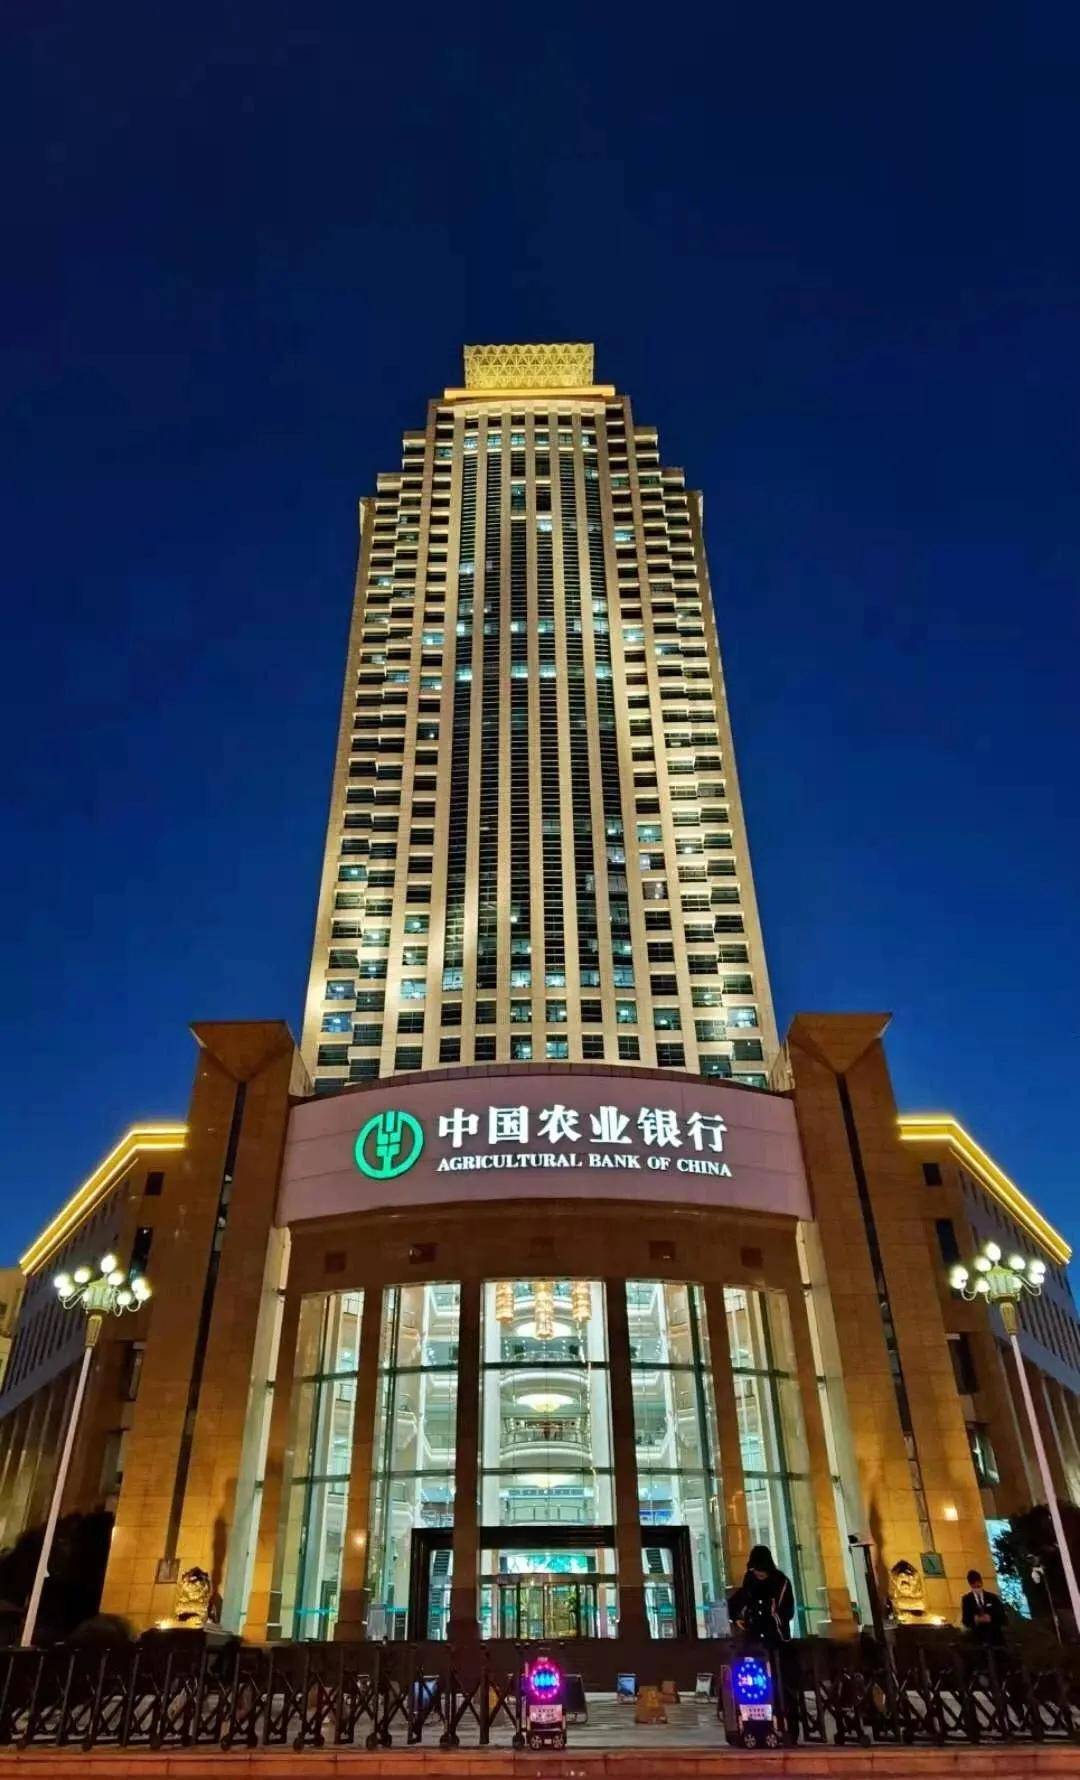 2020年12月31日晚,农行山东省分行办公大楼灯火通明(图片来源:中国